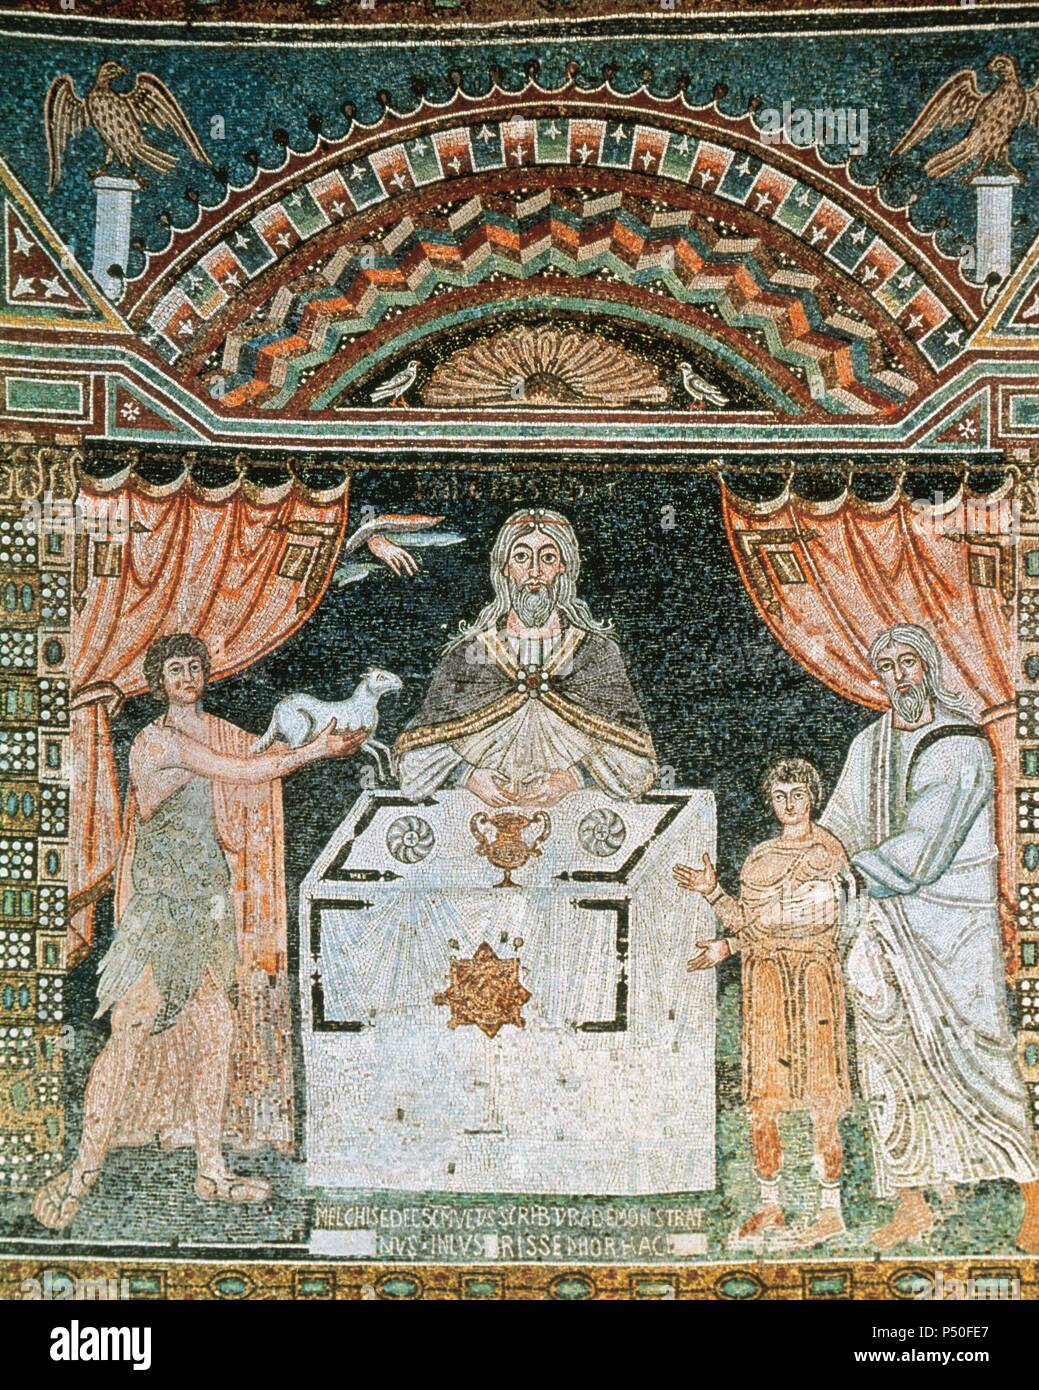 ARTE BIZANTINO. ITALIA. Escena de SACRIFICIO donde aparecen ABRAHAM, ABEL y MELQUISEDEC en torno a un altar el que ofrecen un sacrificio al Señorl. Mosaico de la iglesia de San Apollinare in Classe, datado en los s. VI-VII. Rávena. Stock Photo